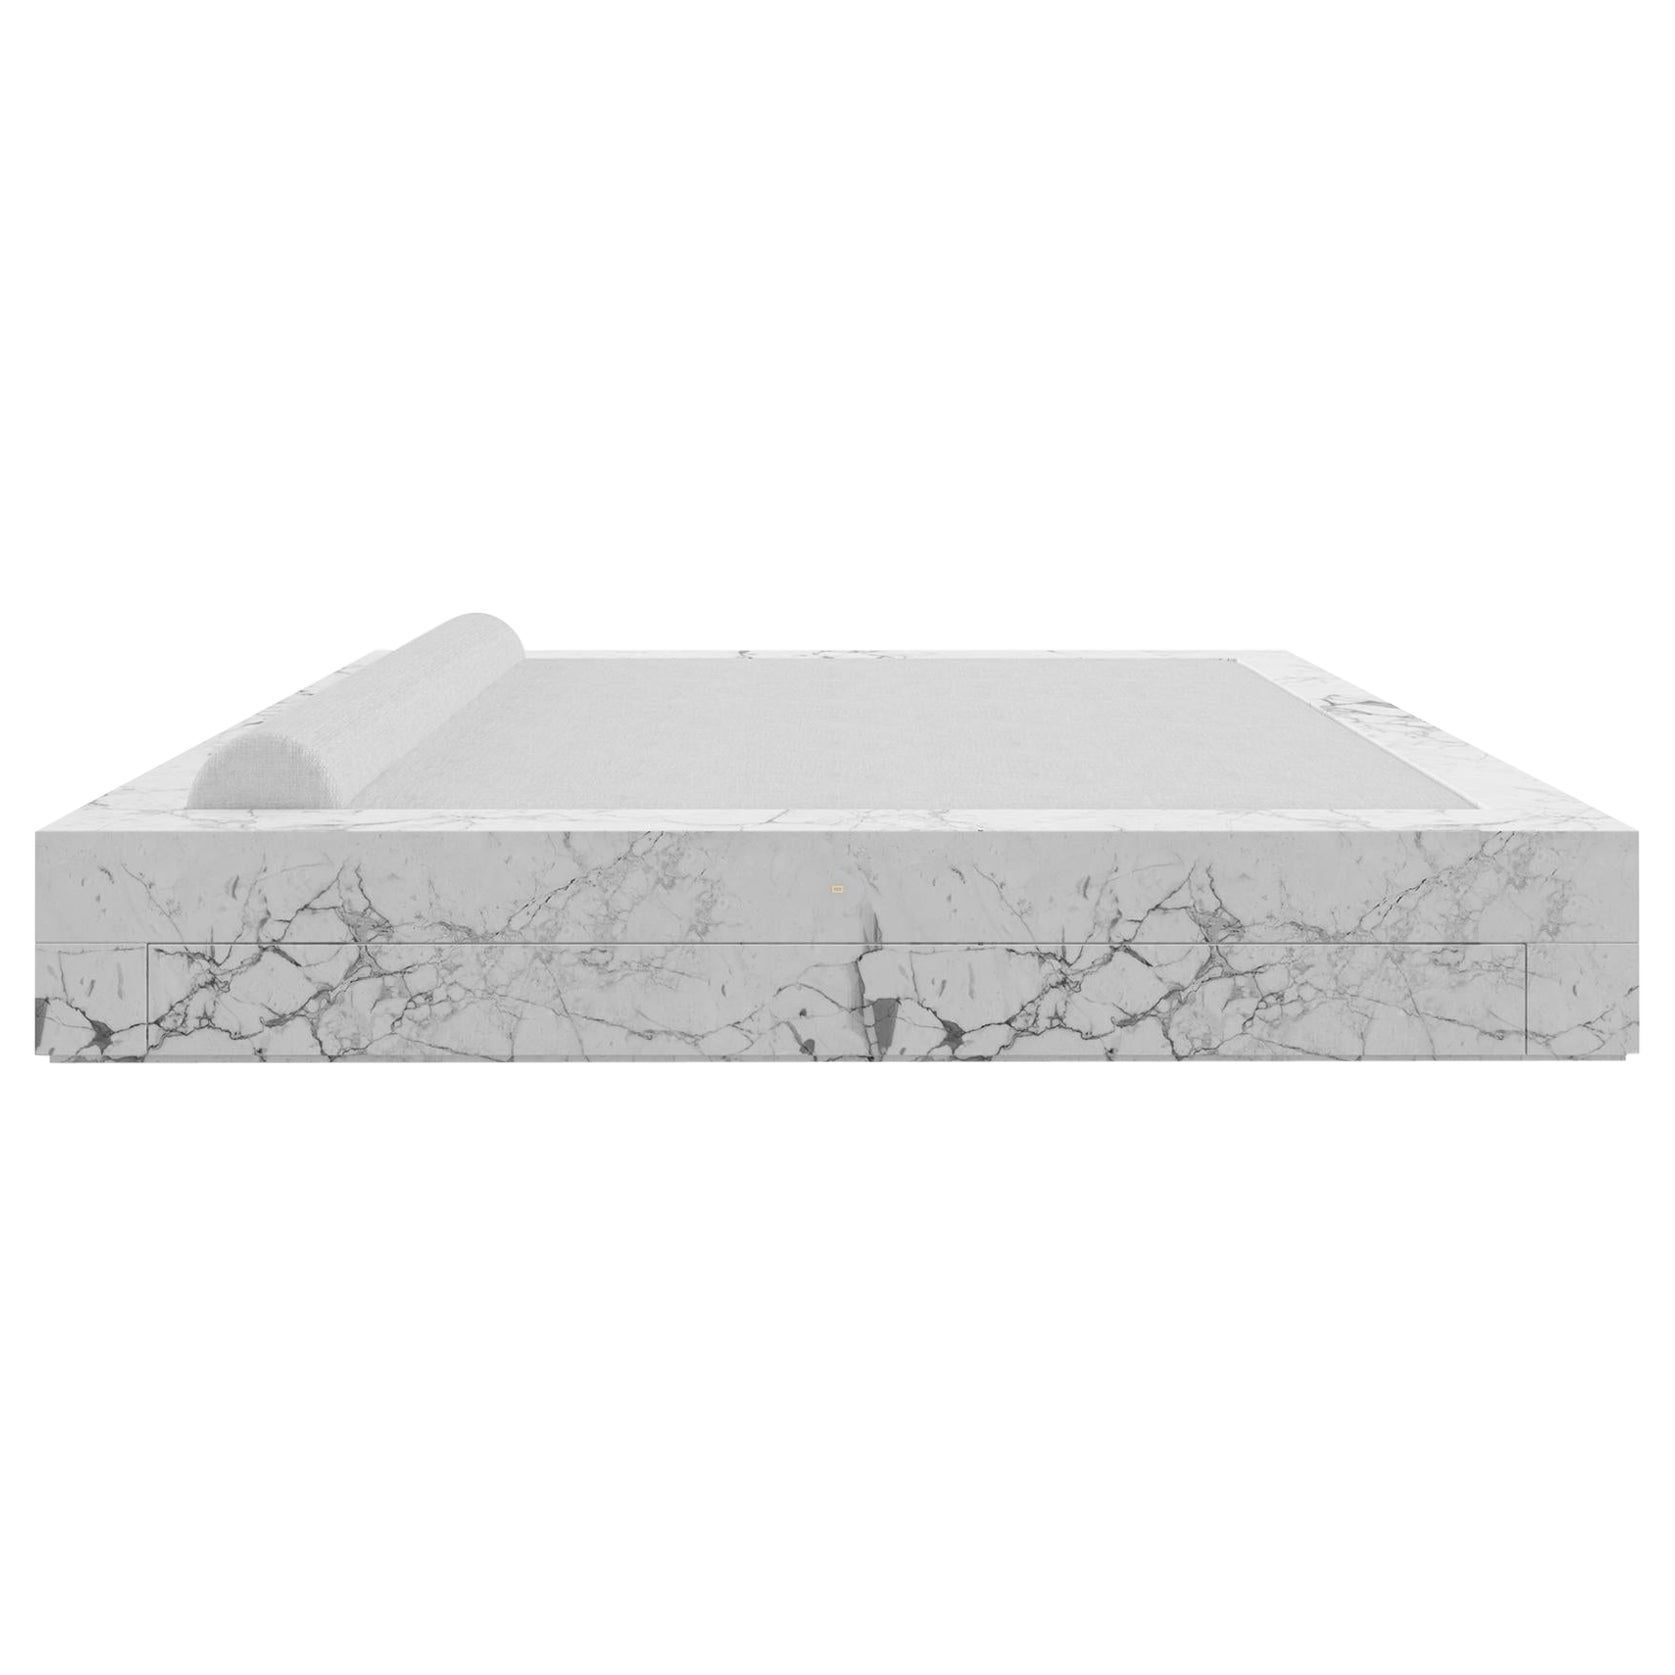 Matière en marbre blanc 260x260x40-220x220cm, tiroir, Allemagne, fabrication artisanale pc1/1